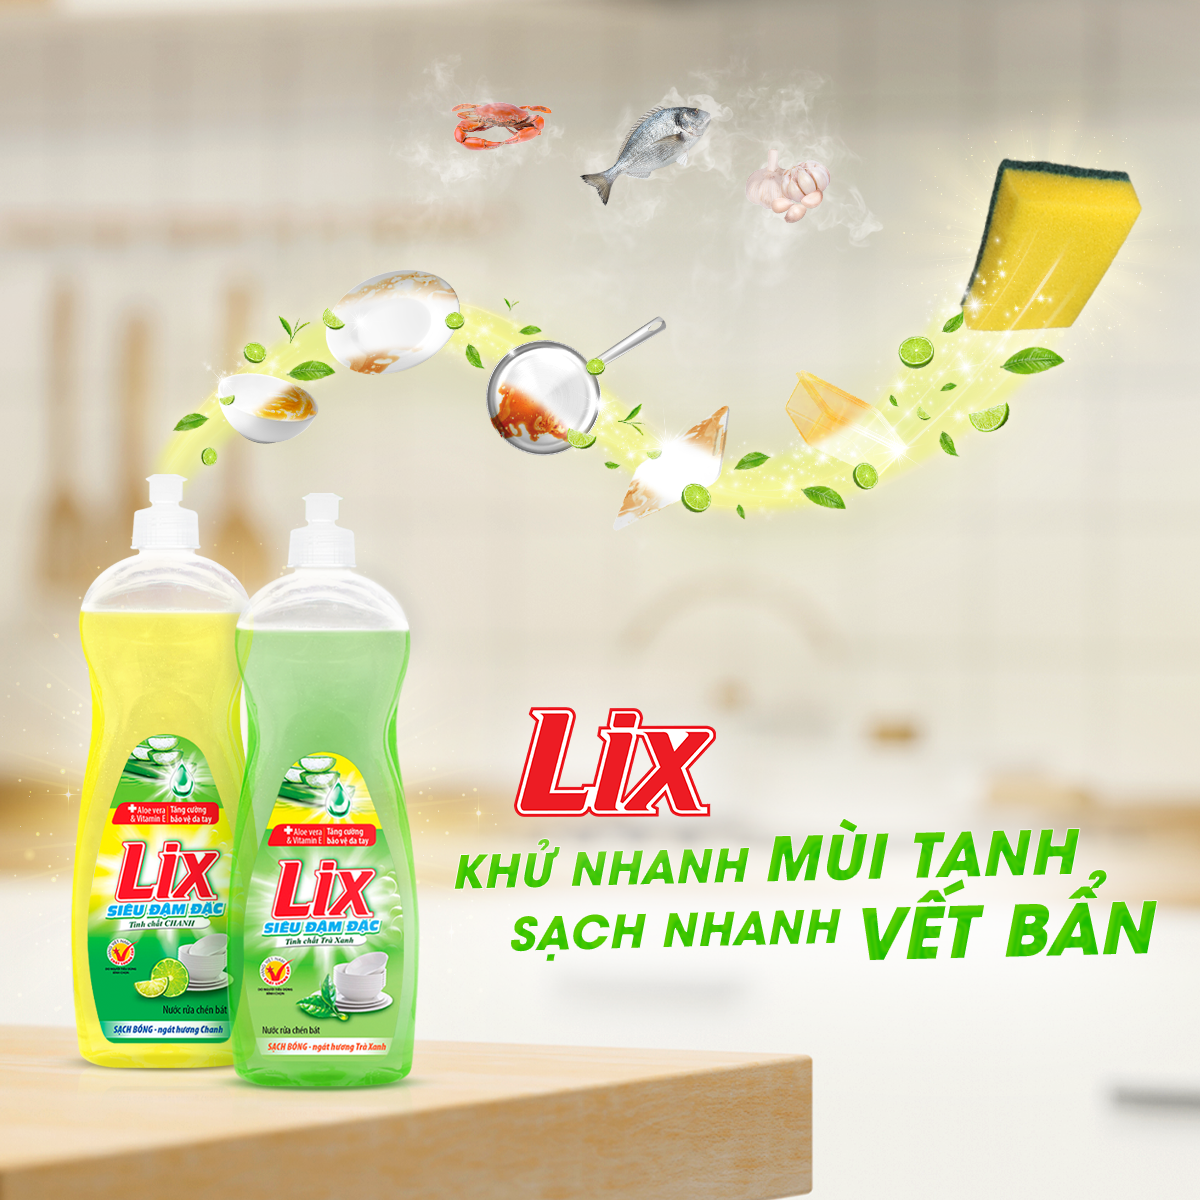 Nước rửa chén Lix với khả năng khử nhanh mùi tanh và vết bẩn 